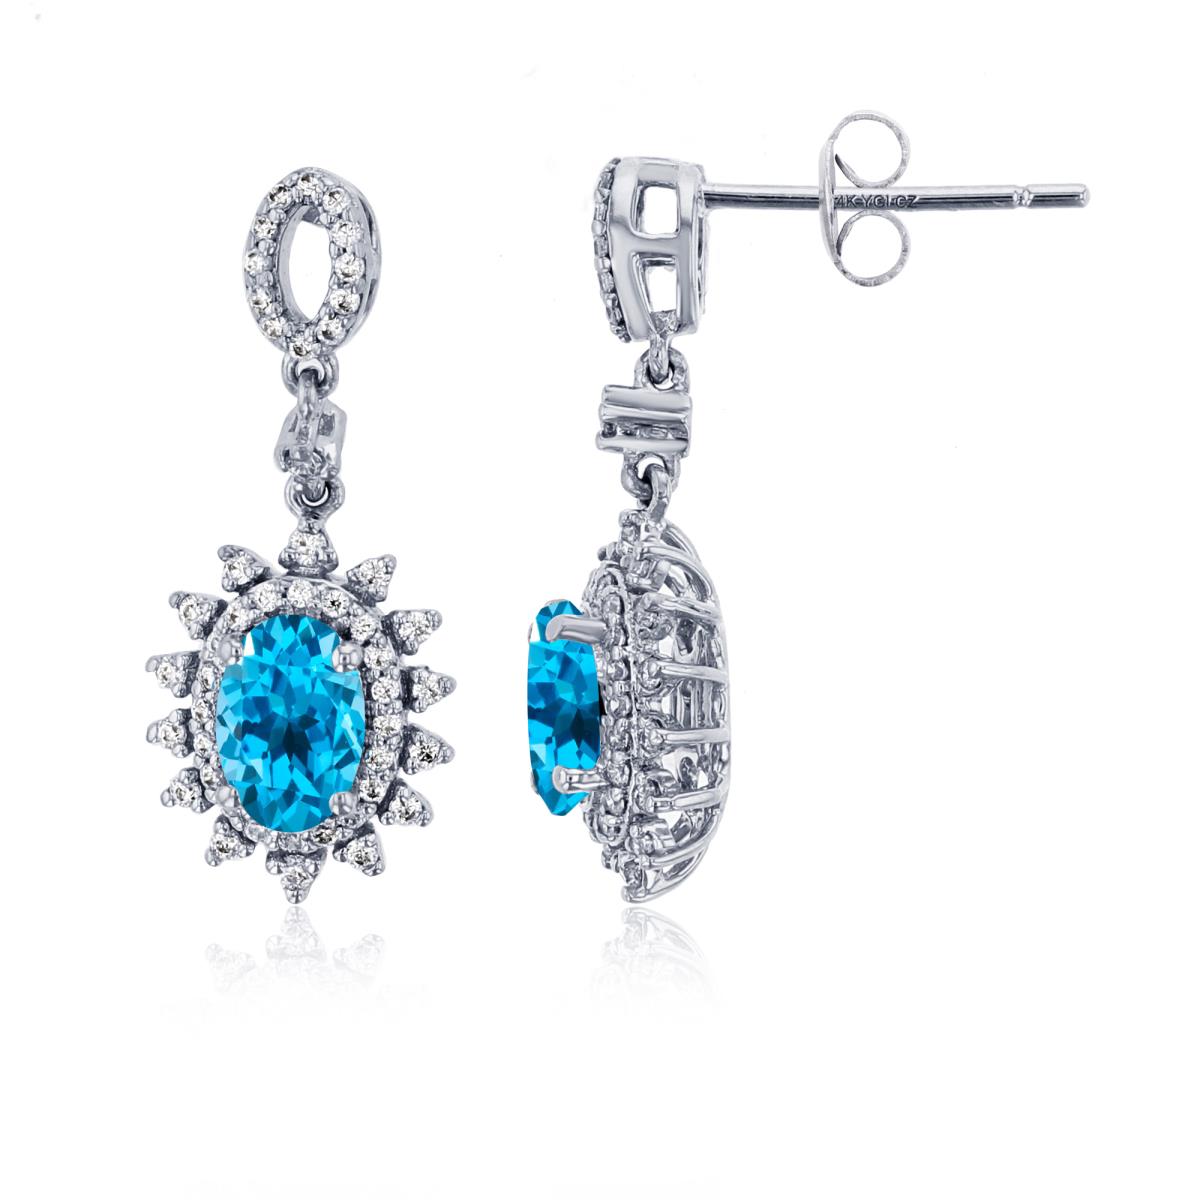 14K White Gold 0.25cttw Rnd Diamonds & 6x4mm Ov Blue Topaz Flower Dangling Earrings